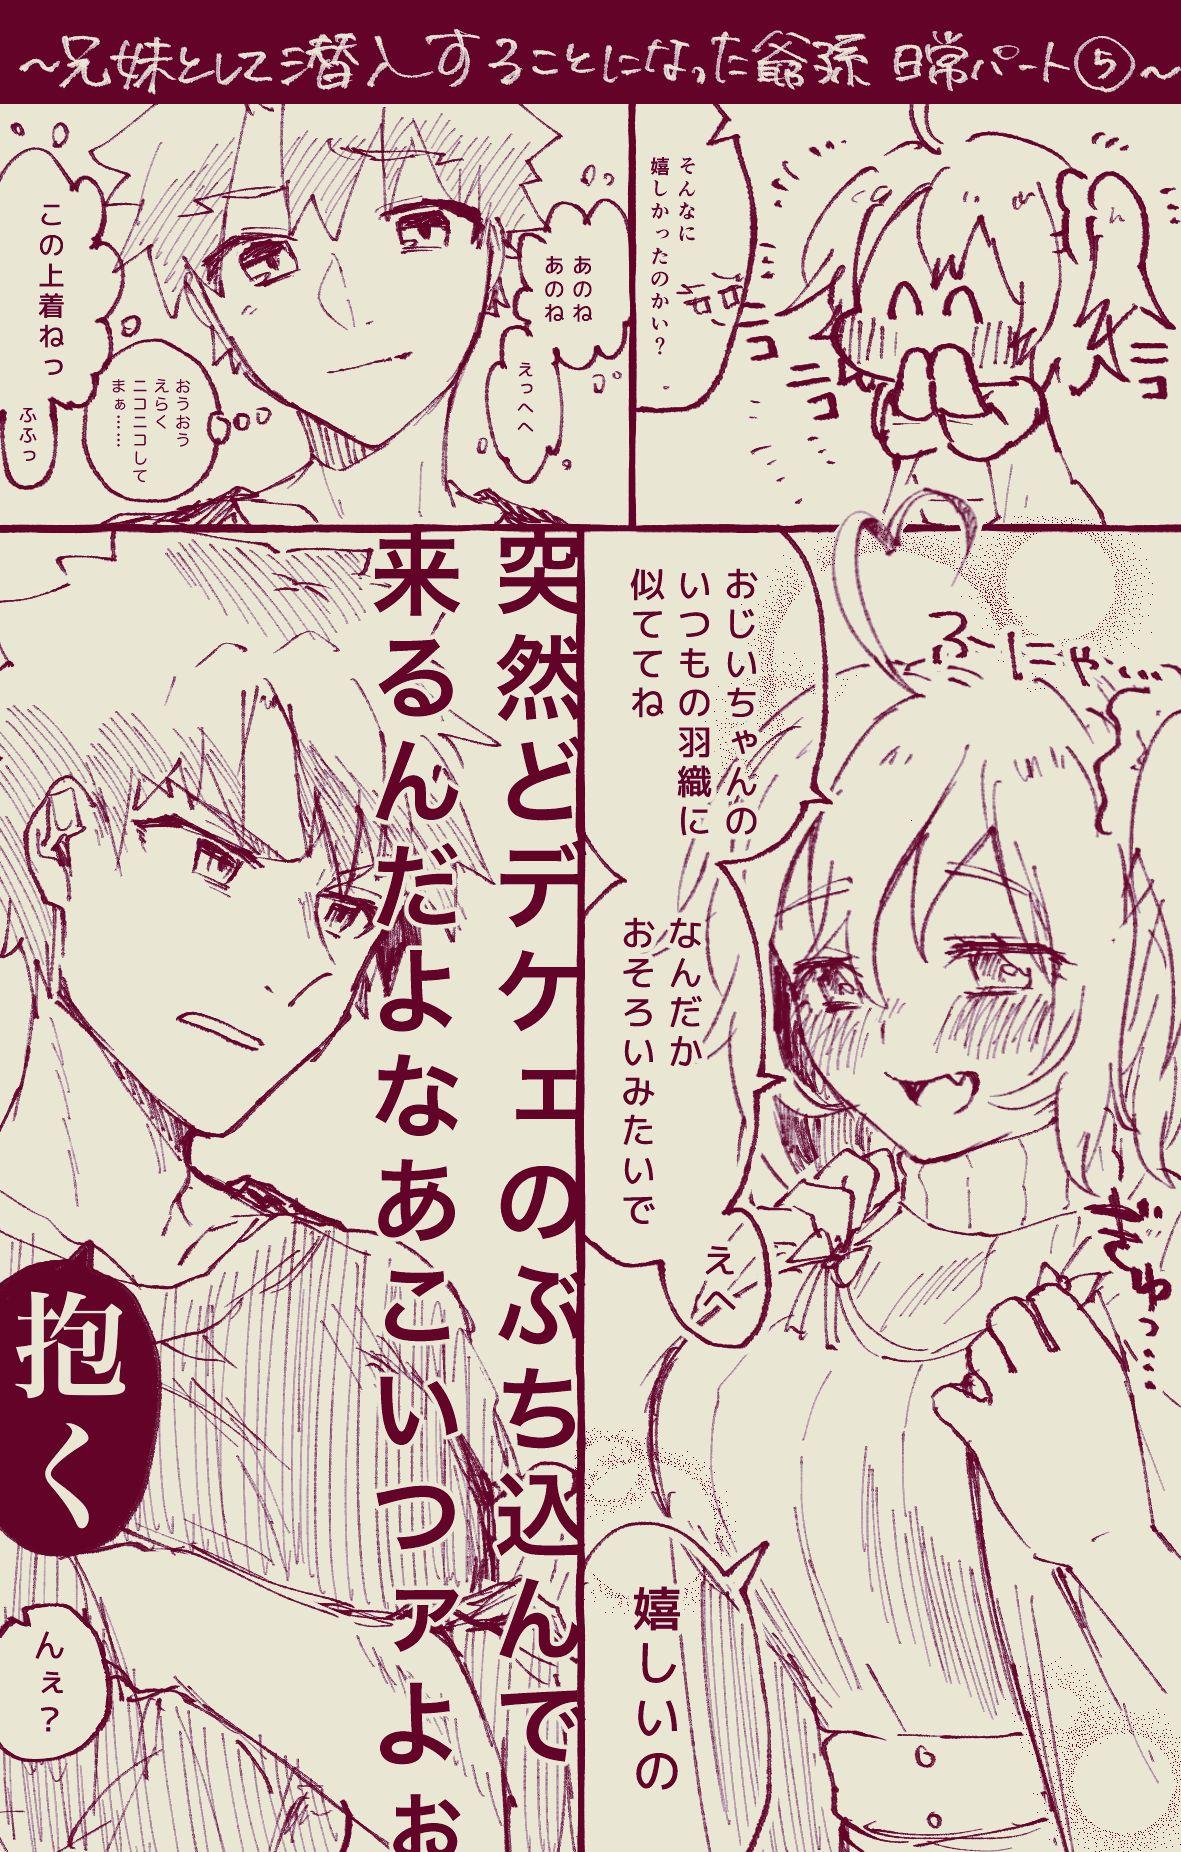 Gayfuck [Ponta] Muramasa Ojii-chan to Gudako-chan no Honobono Jiji Mago Nikki 5 (Fate/Grand Order) - Fate grand order Stepmom - Page 26